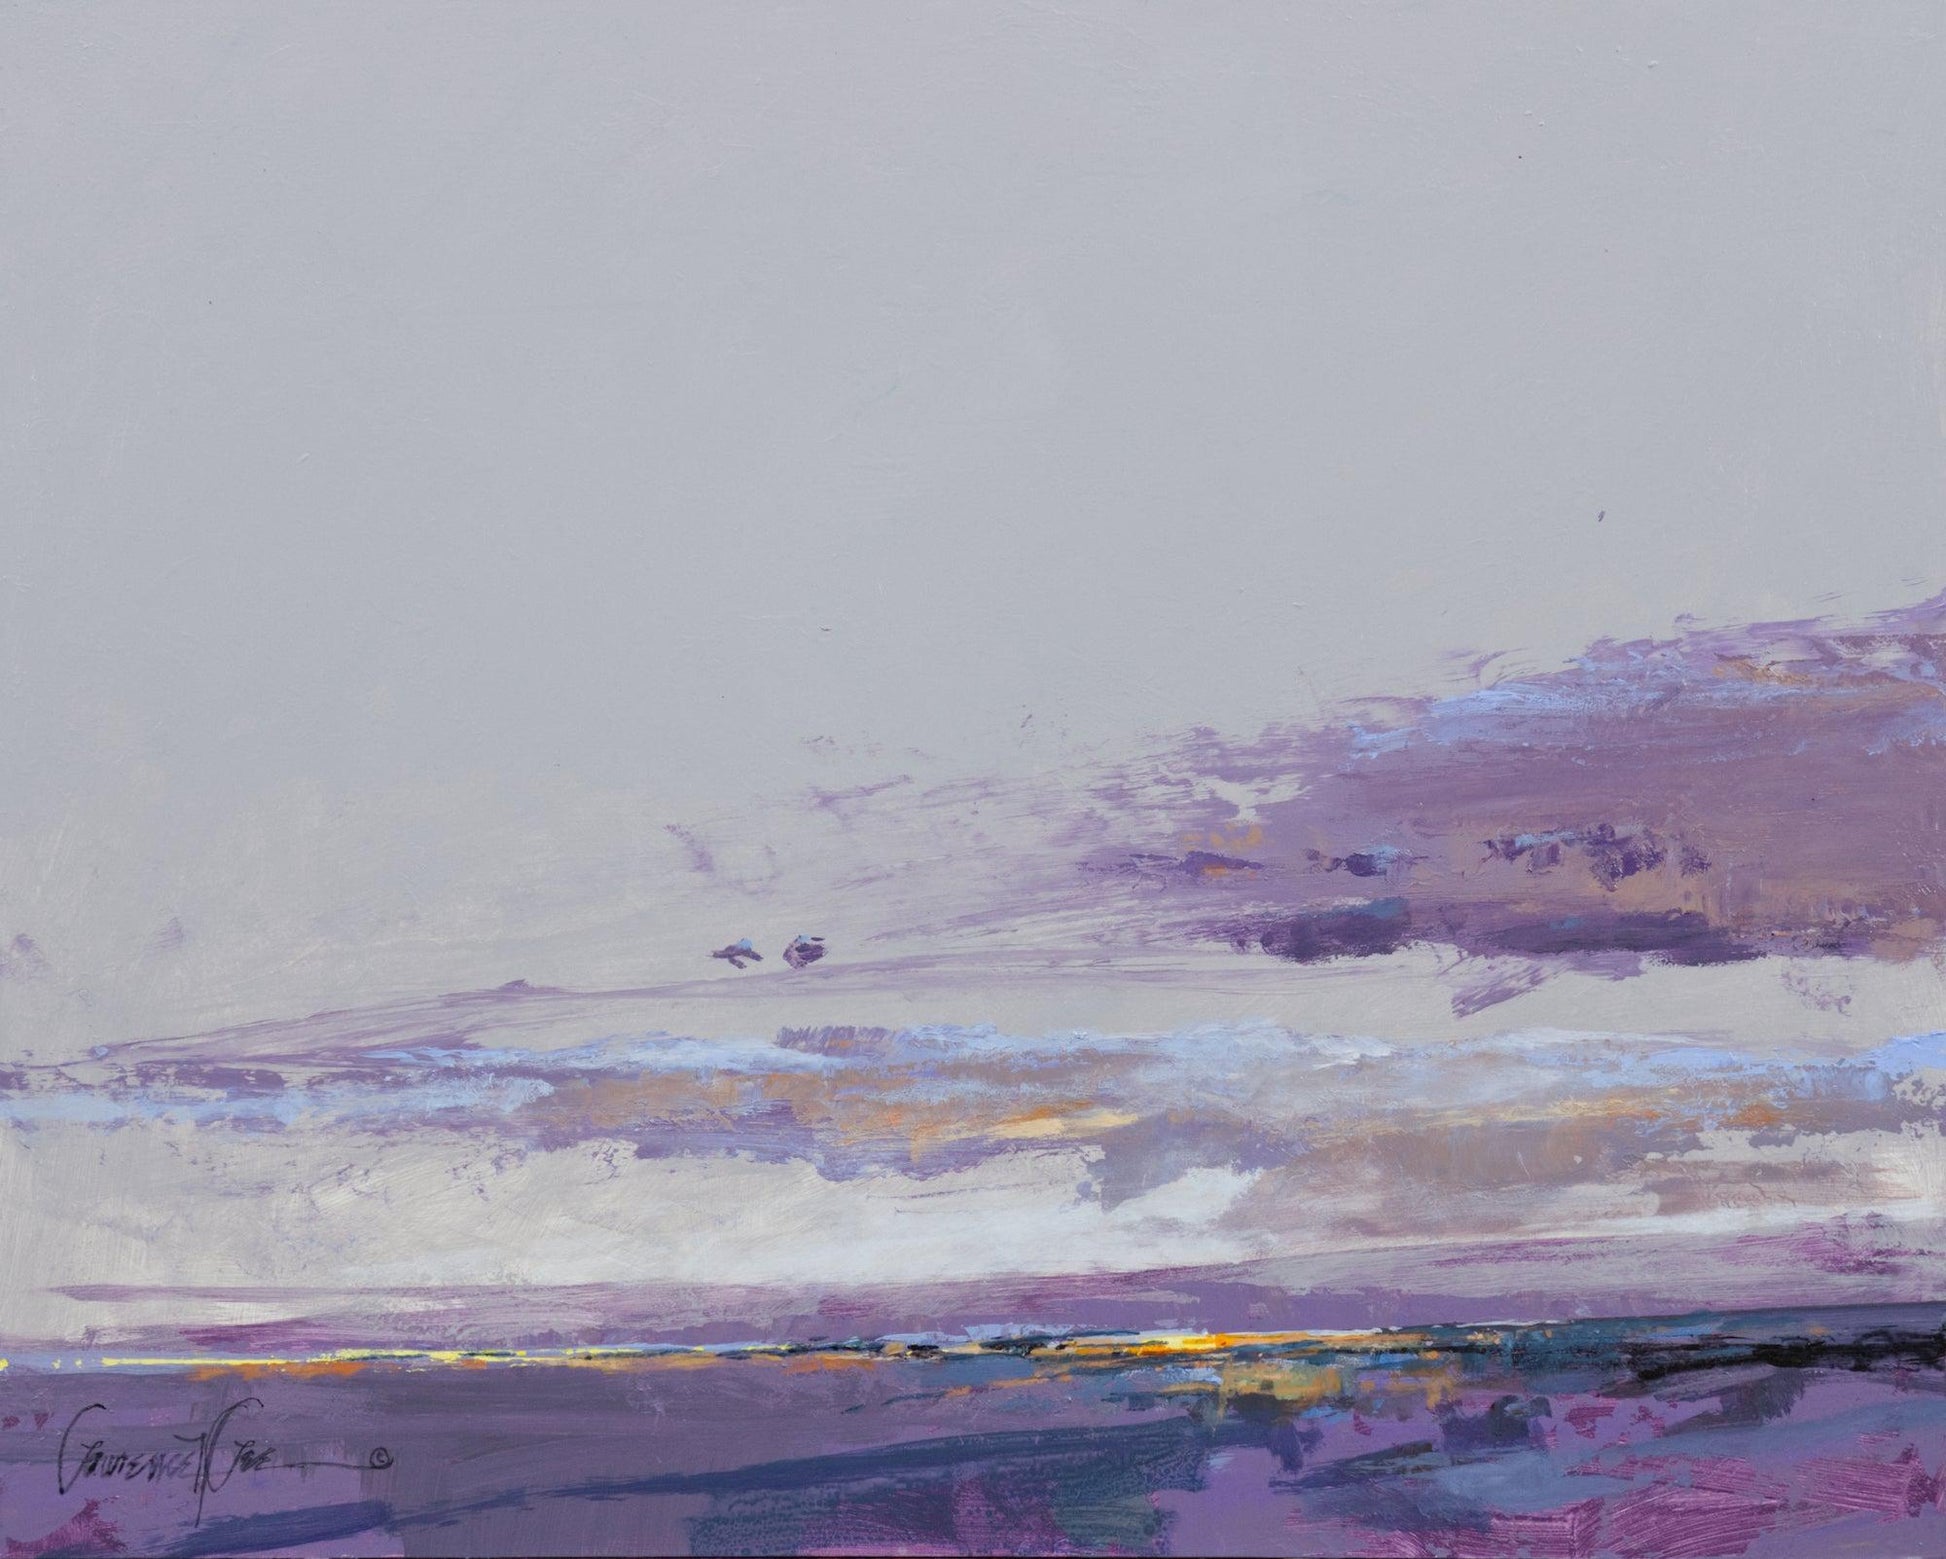 Cool Desert Dawn-Painting-Lawrence Lee-Sorrel Sky Gallery